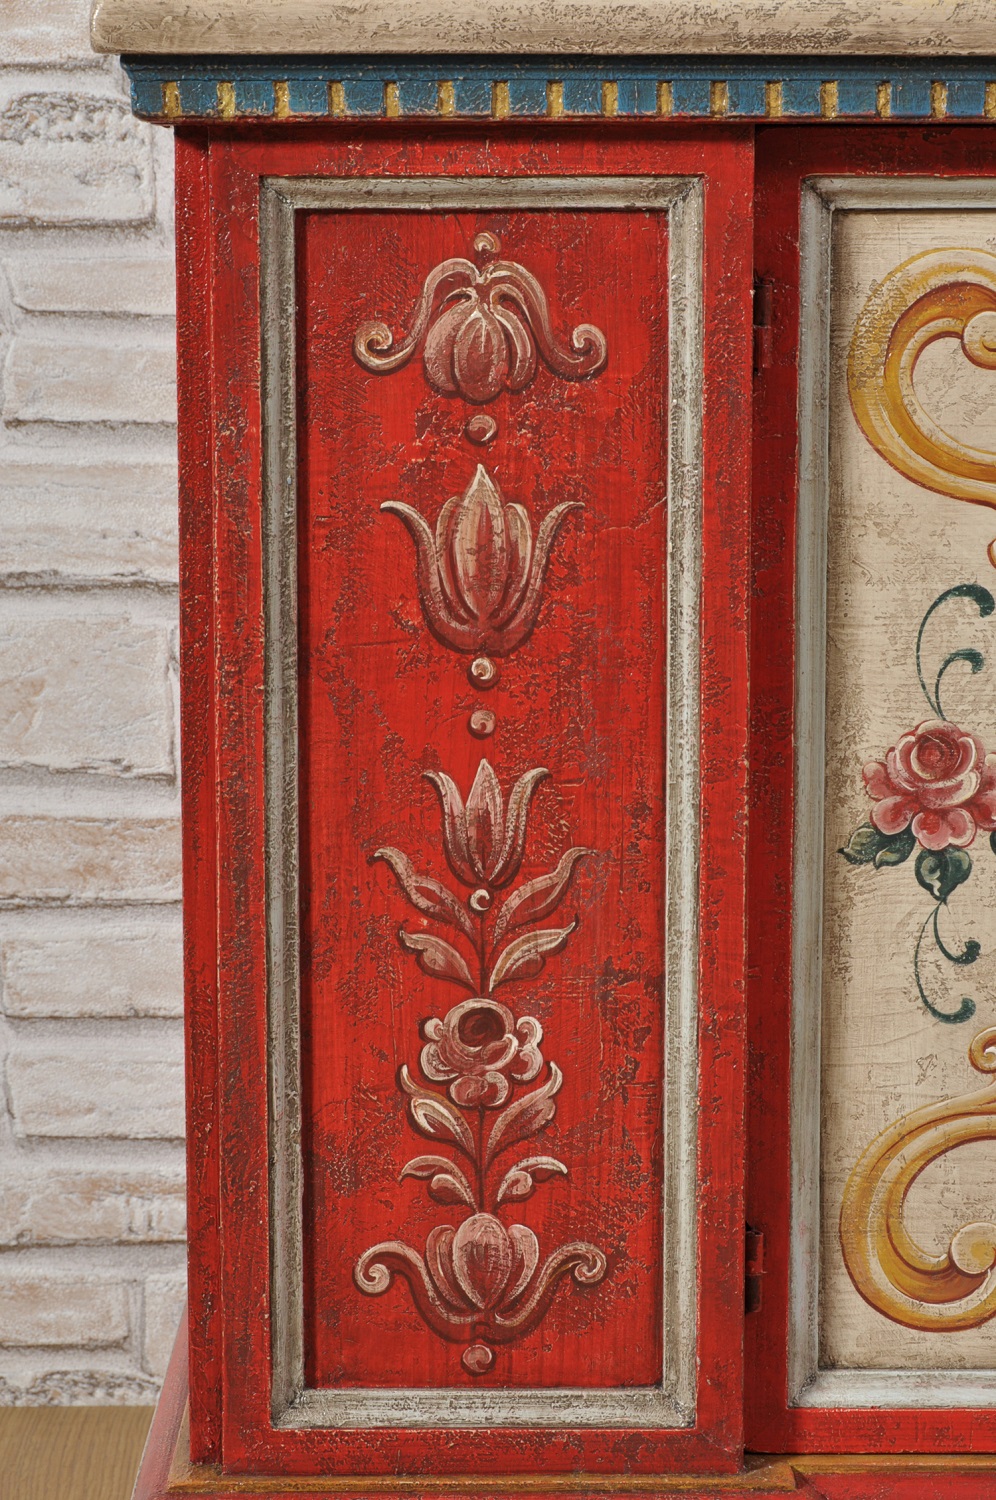 lavorazioni artigianali su misura della credenza cassapanca porta tv tirolese decorata con pilastri dalle tonalità vivaci del rosso e giallo con pitture di fiori e barocchi eseguiti a mano